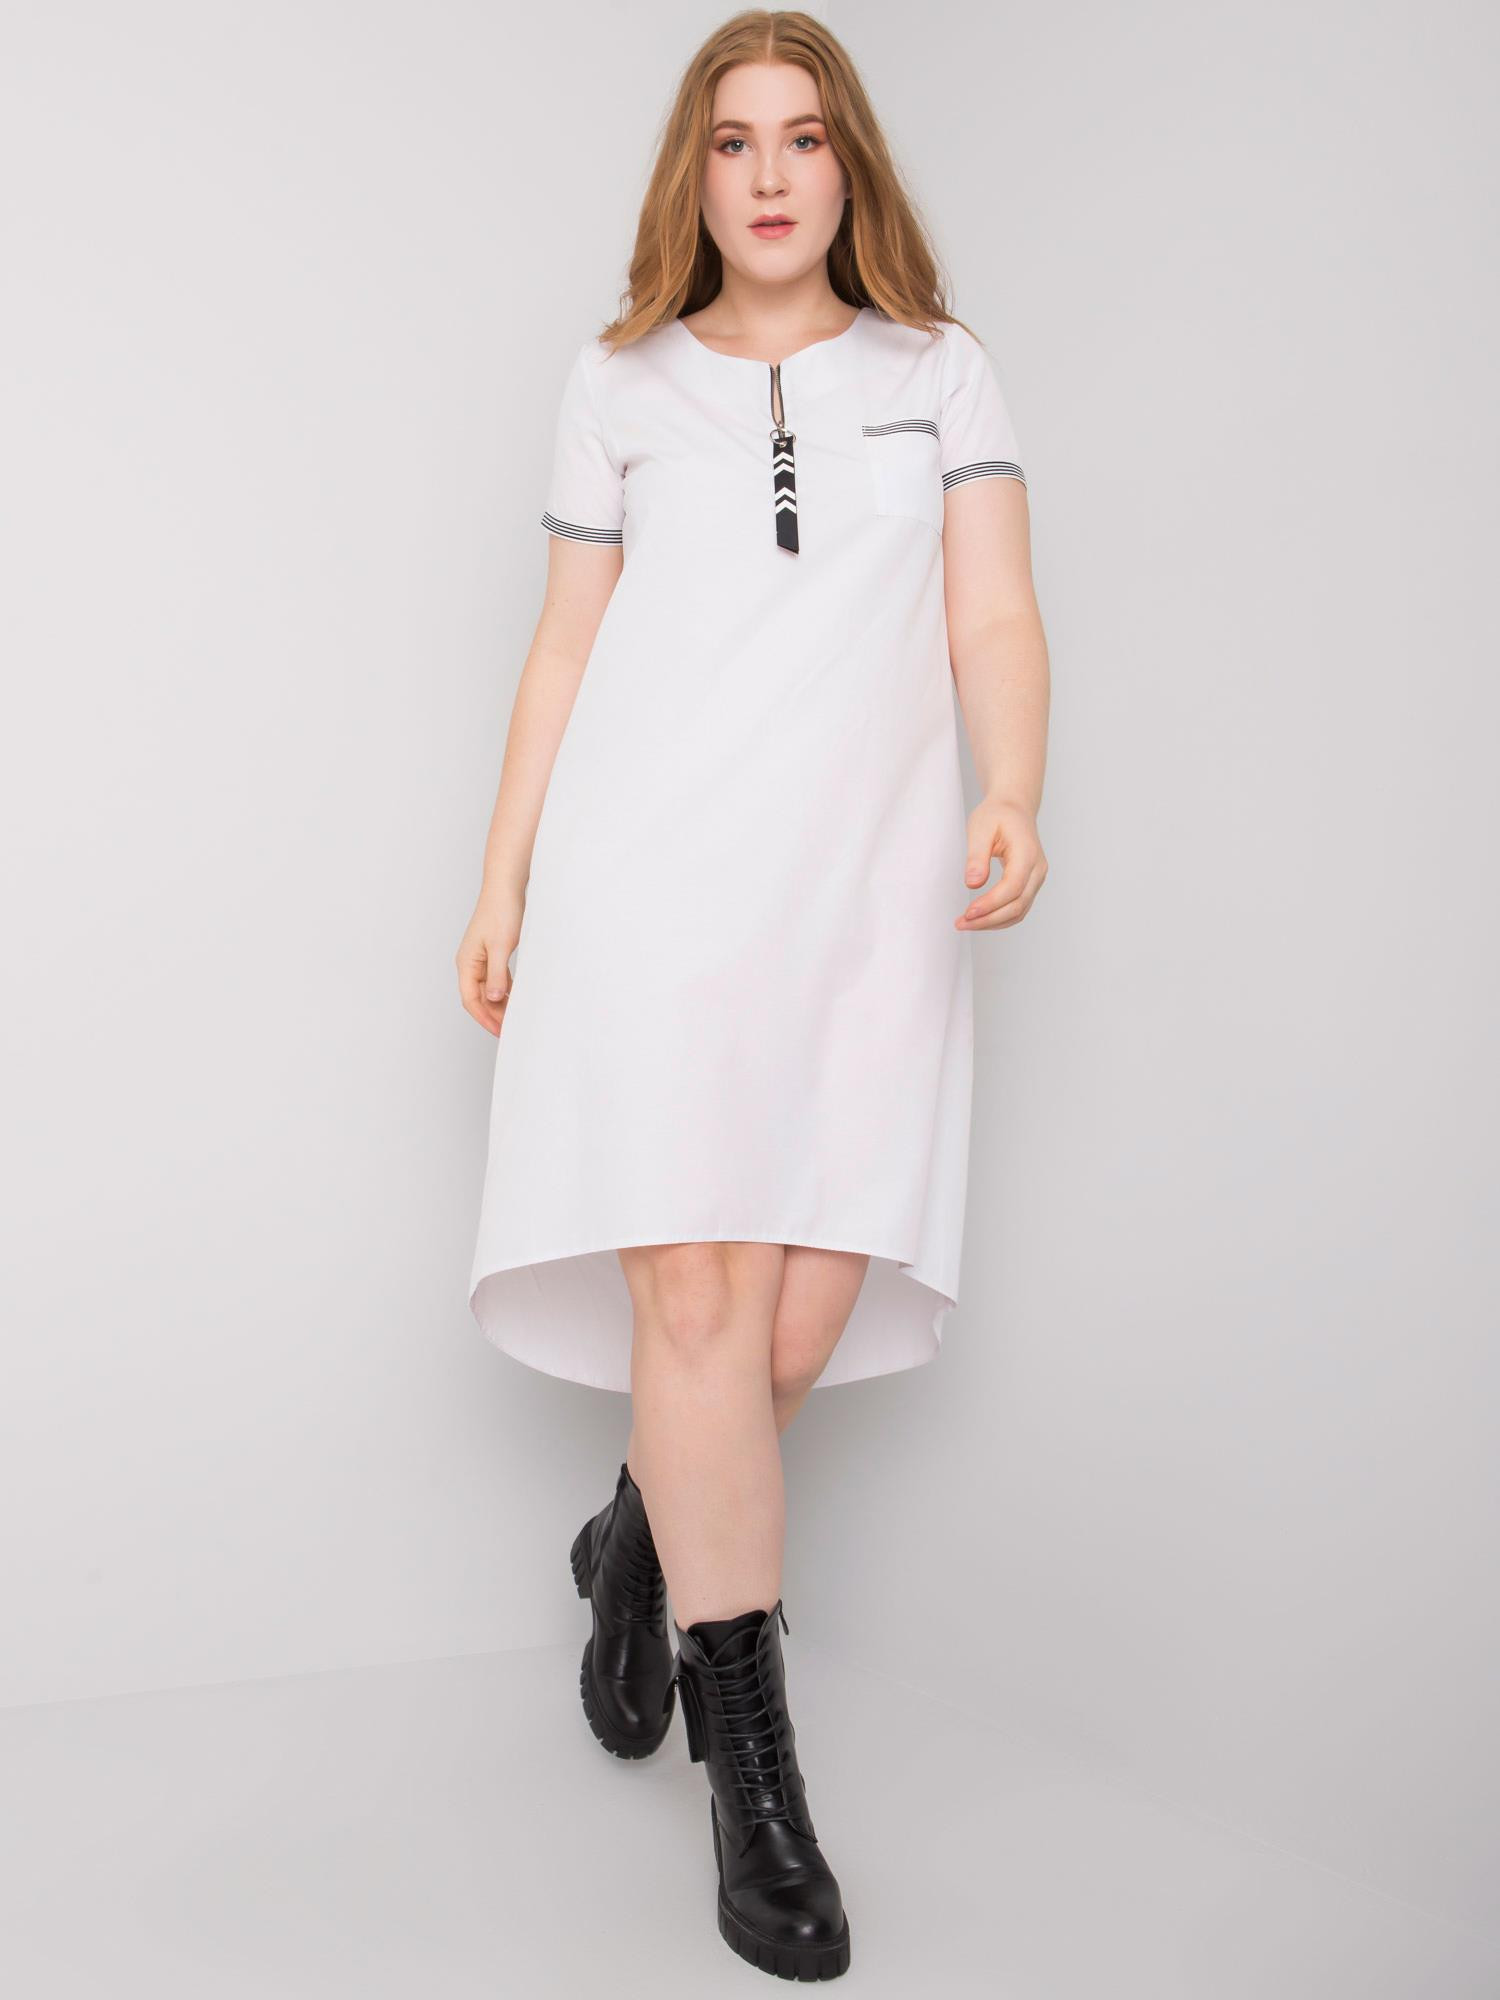 Bílé bavlněné šaty plus size 44